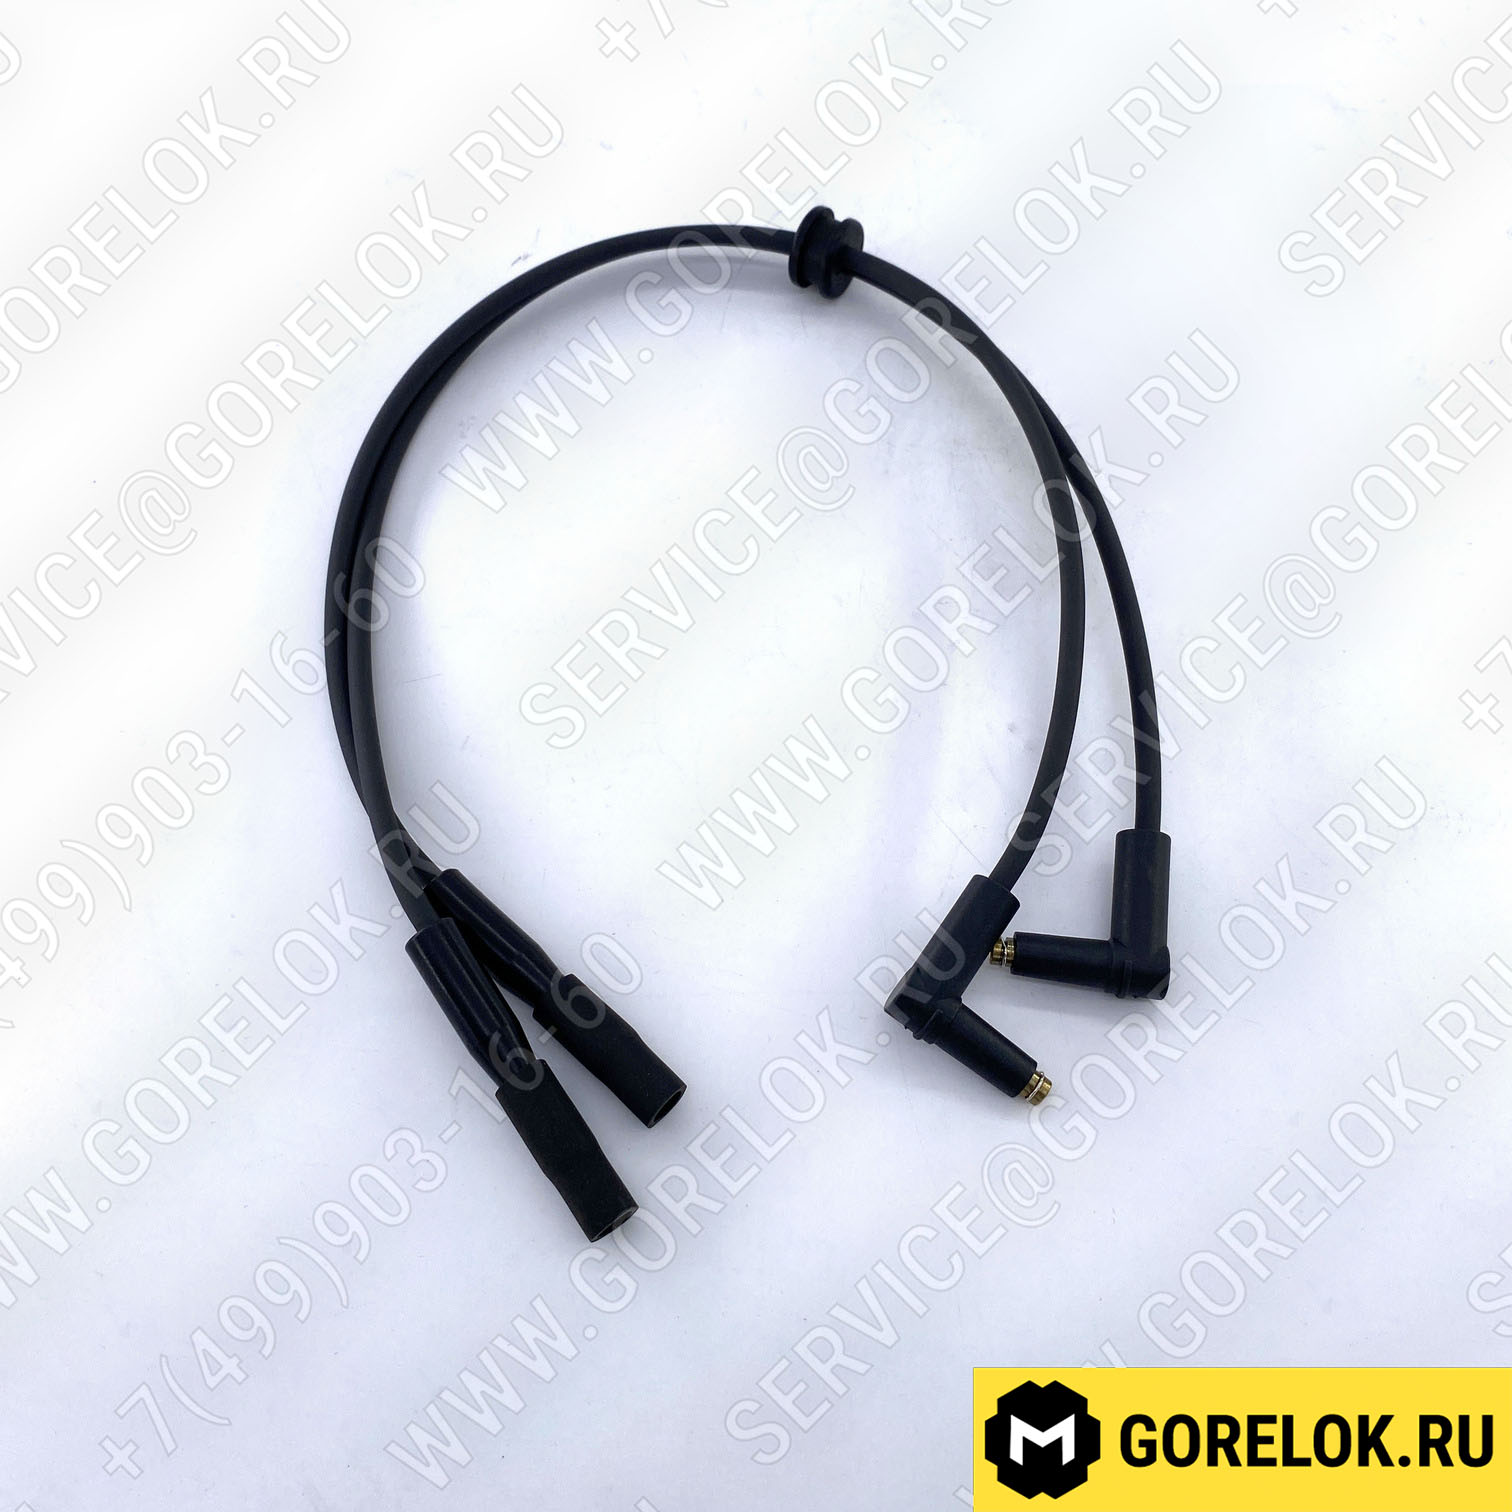 Комплект кабелей поджига Weishaupt 540 мм арт.24011011052 цена, купить